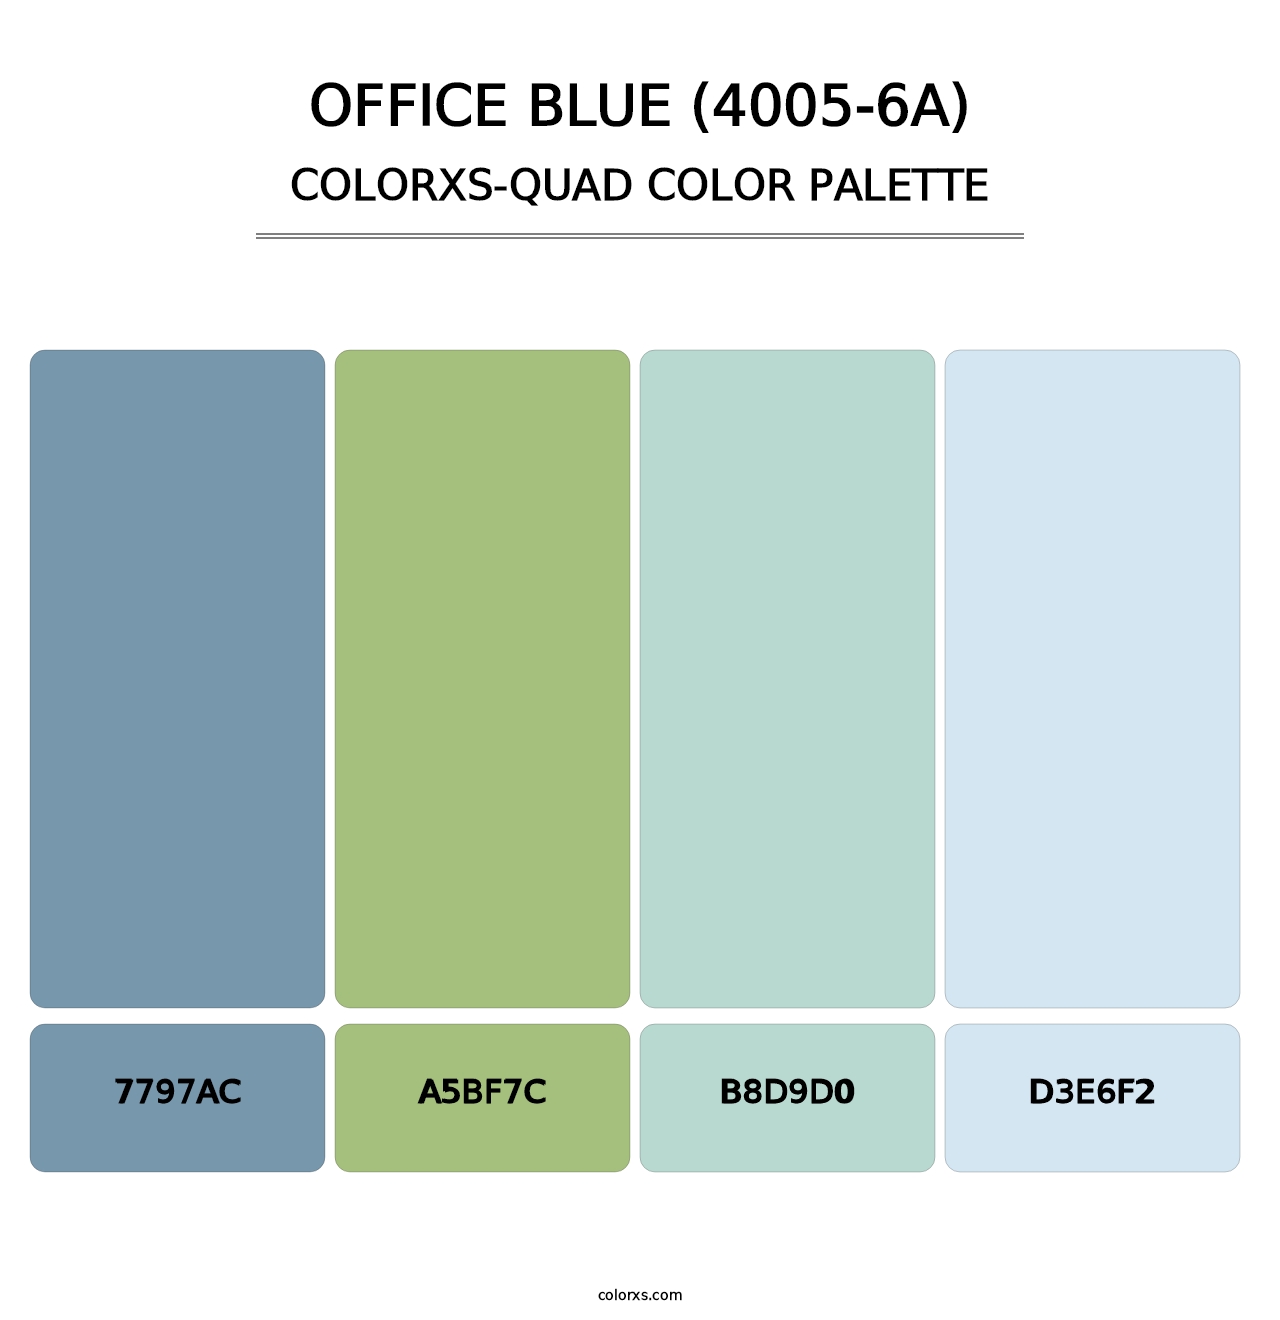 Office Blue (4005-6A) - Colorxs Quad Palette